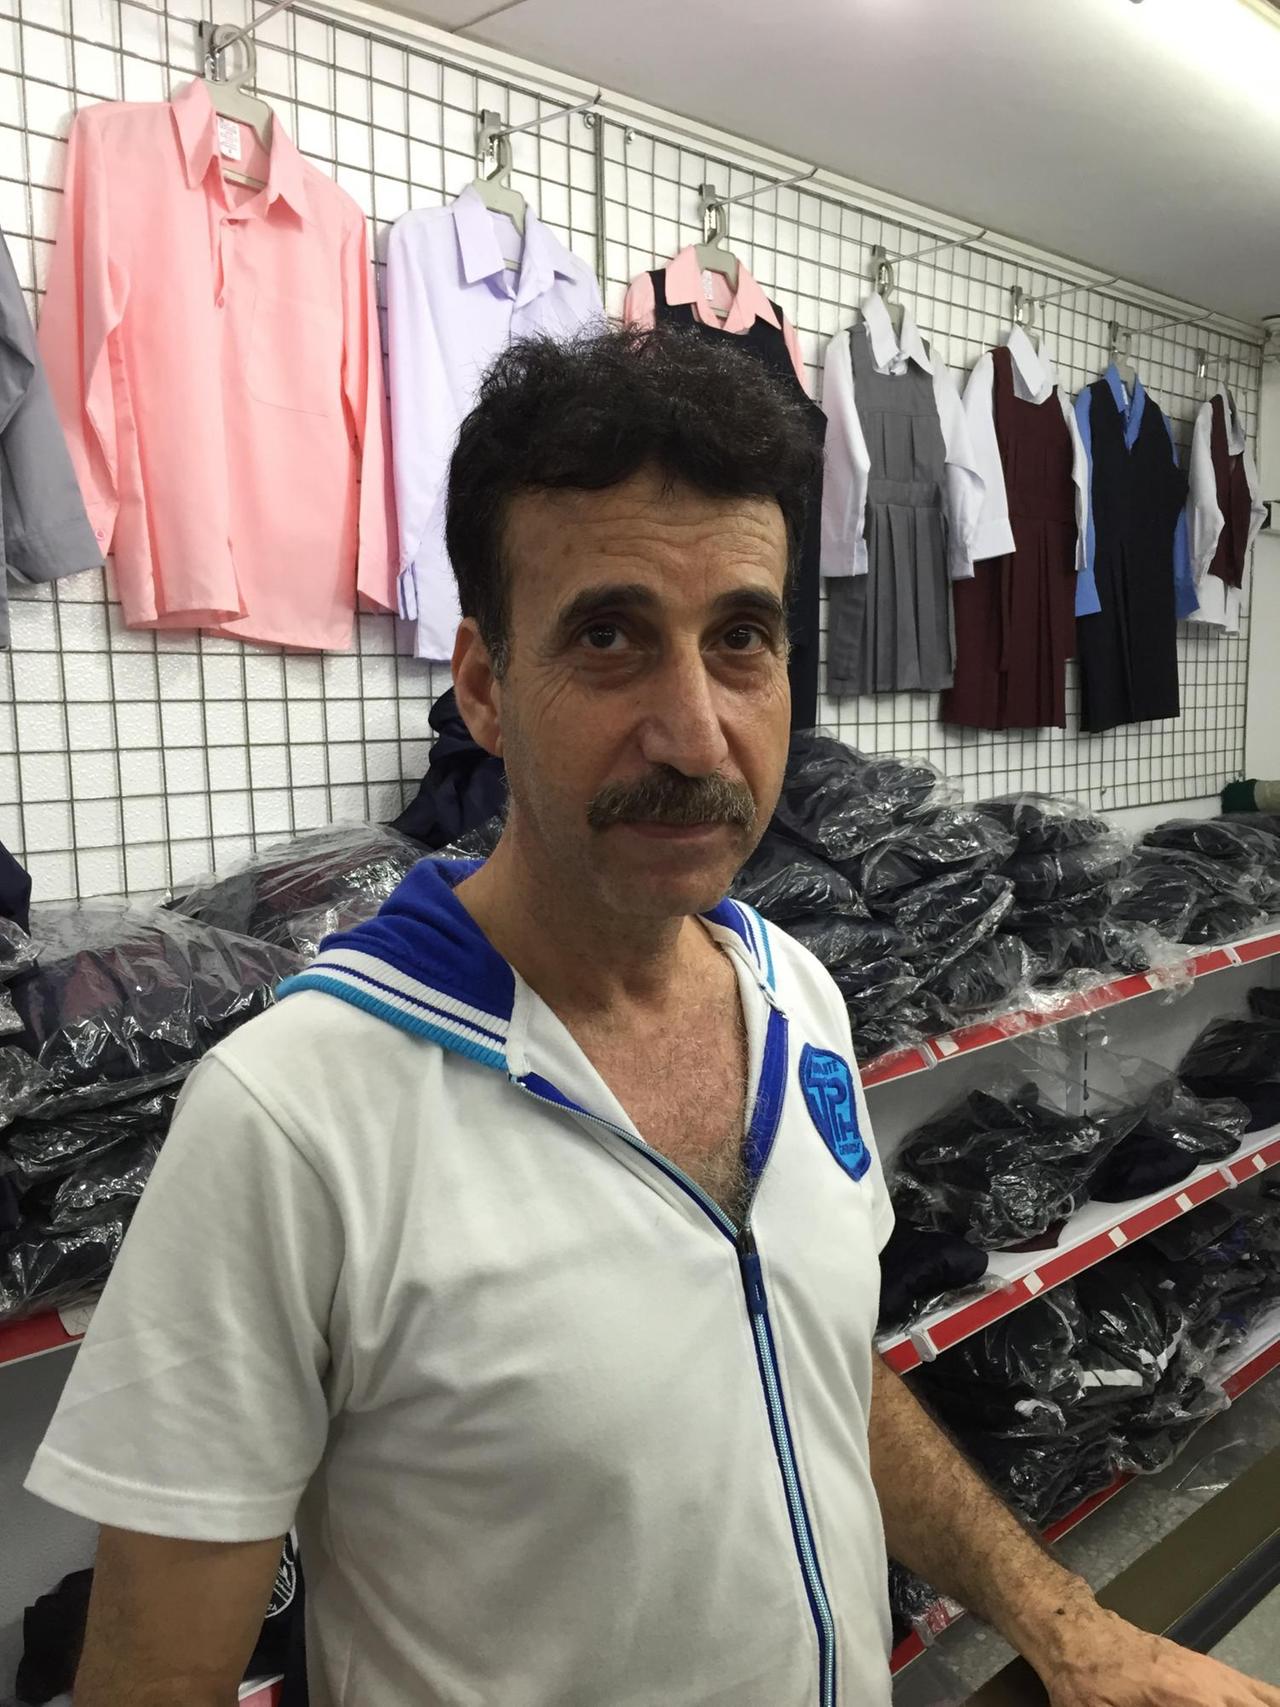 Samir Sada, Betreiber eines Schulfachgeschäfts, in seinem Laden, vor Regalen und Bügeln mit Kleidung.